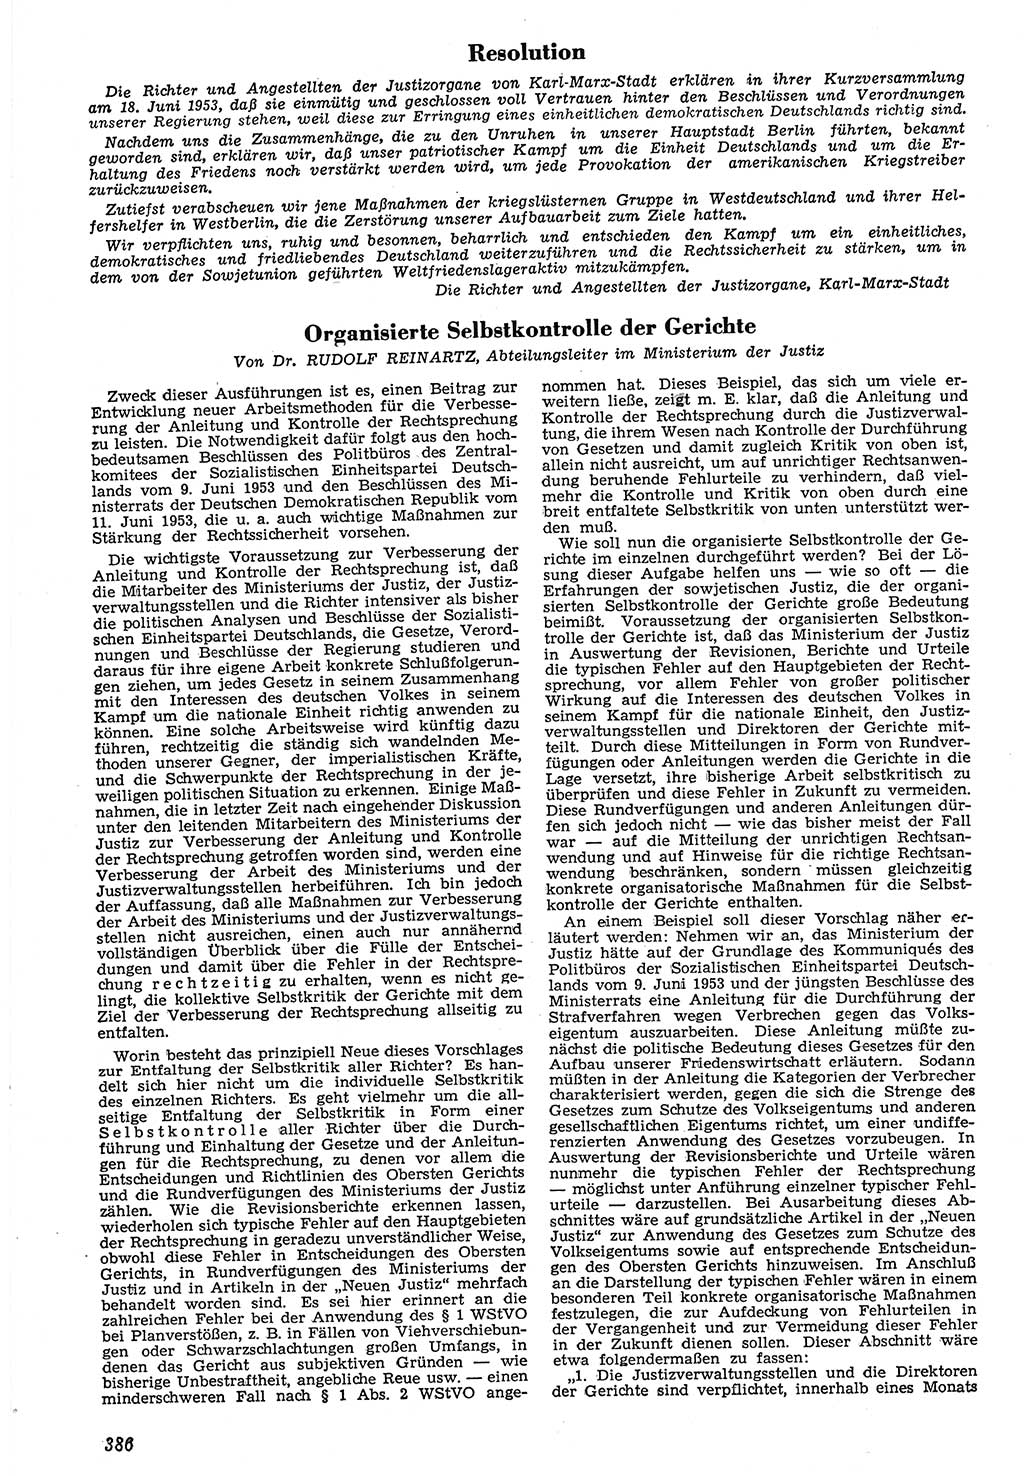 Neue Justiz (NJ), Zeitschrift für Recht und Rechtswissenschaft [Deutsche Demokratische Republik (DDR)], 7. Jahrgang 1953, Seite 386 (NJ DDR 1953, S. 386)